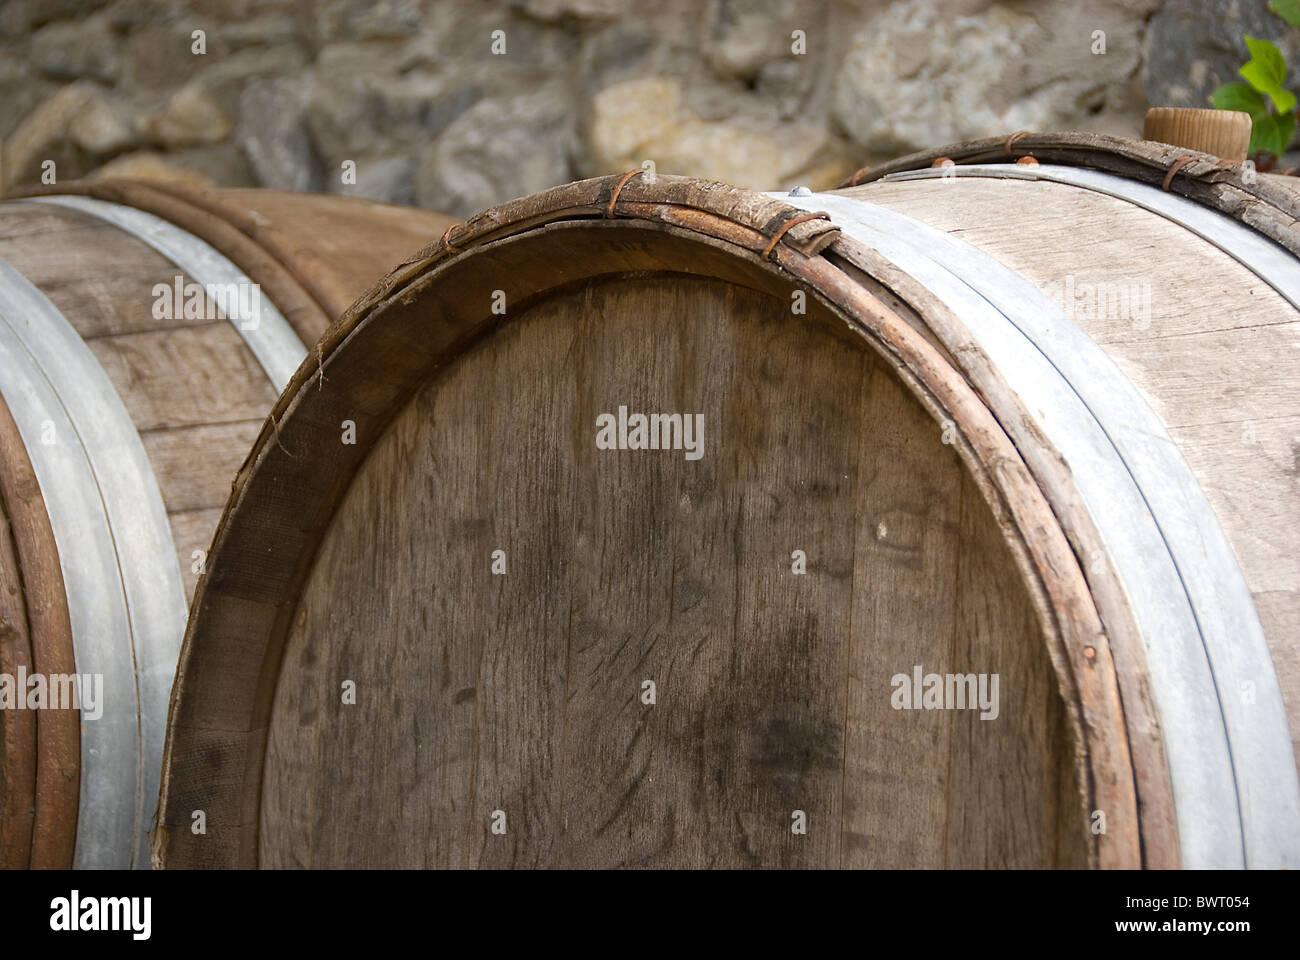 Barile di vino per la produzione e conservazione del vino Foto Stock